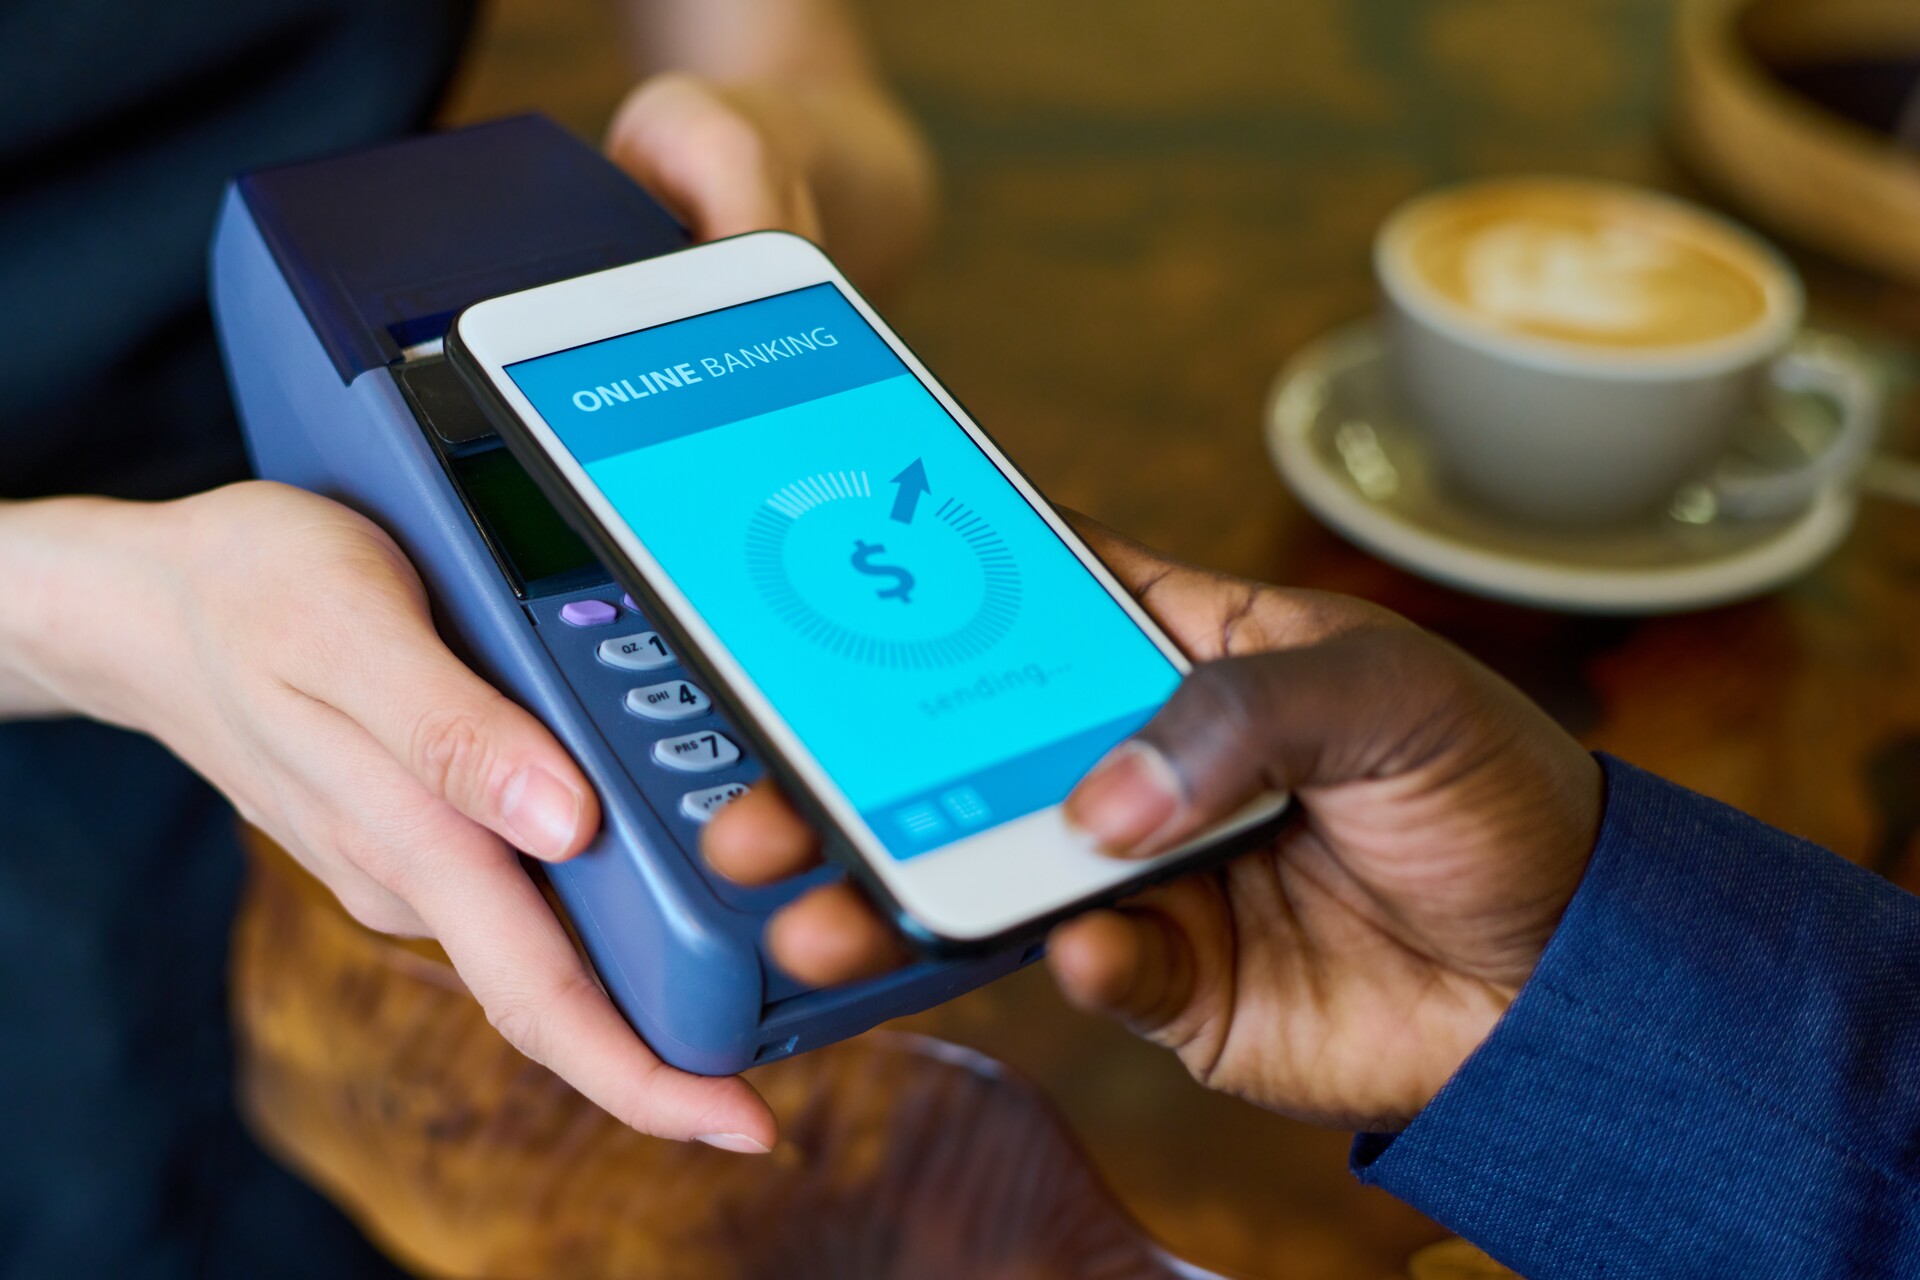 Mobilbetalinger: Fordelene med mobilbetalinger er bekvemmelighet, hastighet og ekstra sikkerhetsfunksjoner, som fingeravtrykk eller ansiktsgjenkjenning